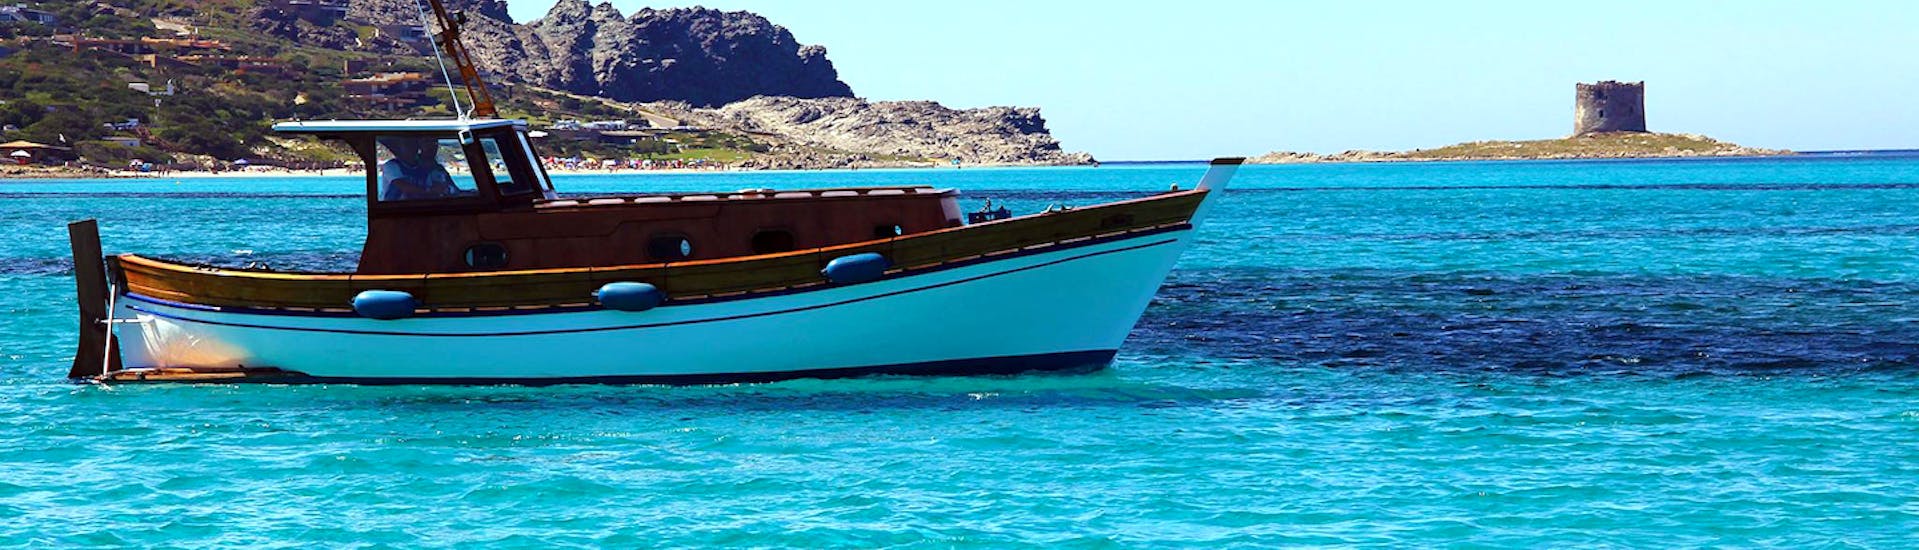 La barca di Onda Blu Asinara usata per la Gita in barca da Stintino al Parco dell'Asinara con pranzo sta navigando nel mare.